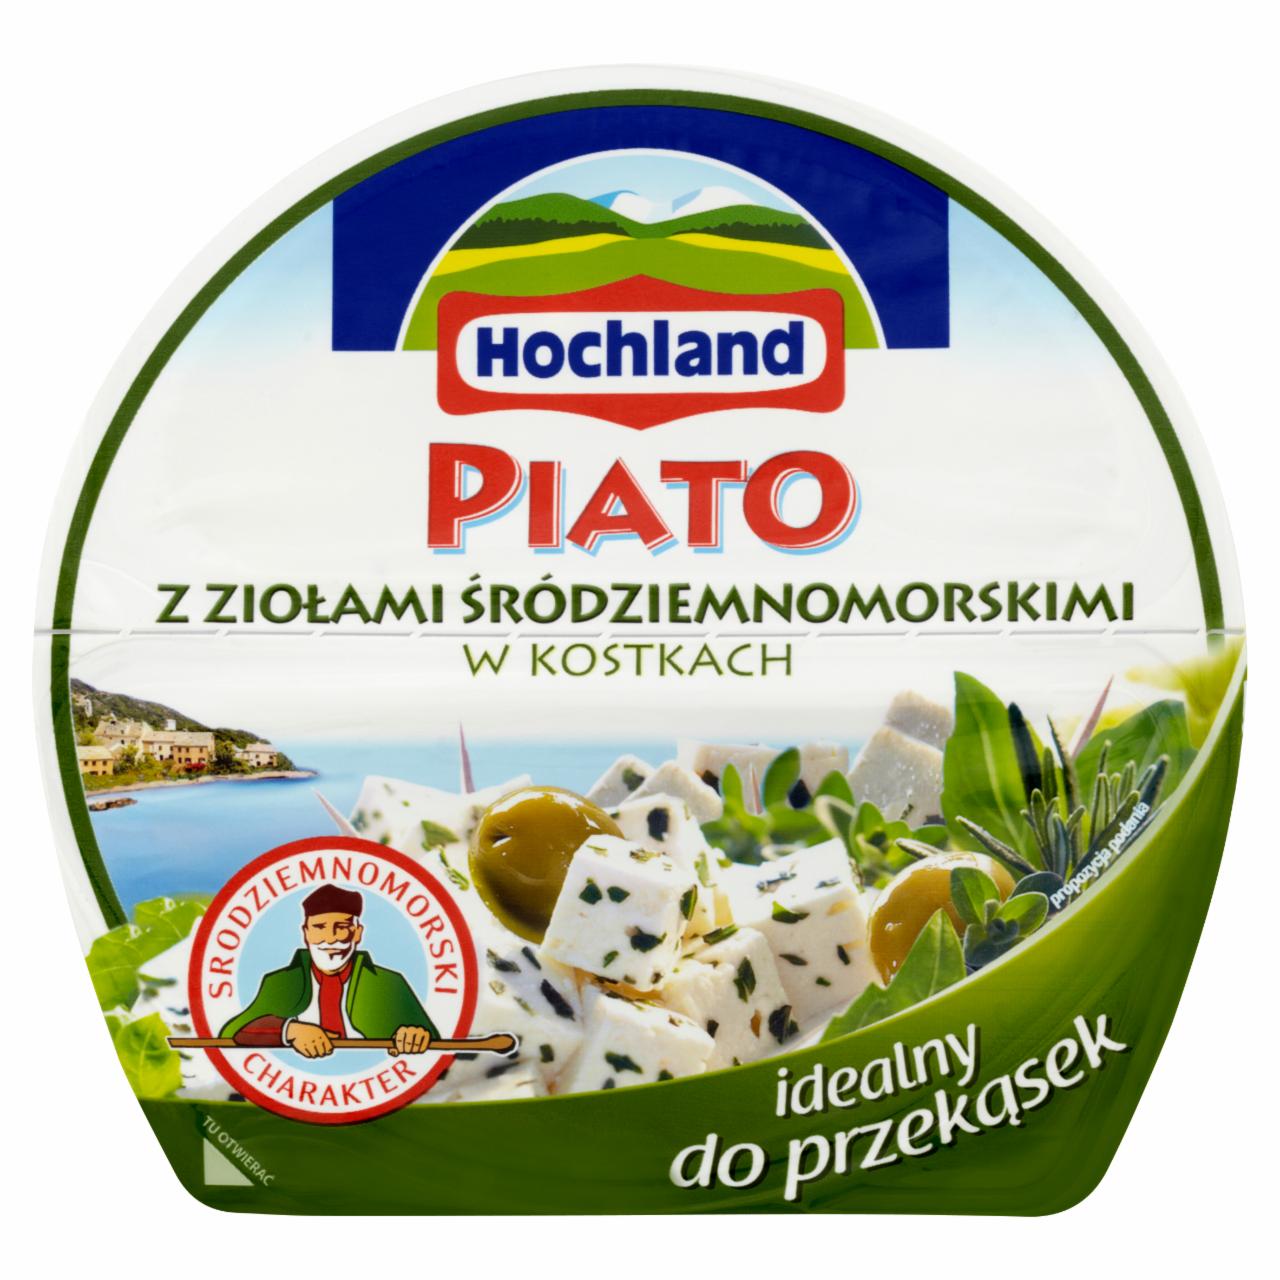 Zdjęcia - Hochland Piato z ziołami śródziemnomorskim w kostkach Ser solankowy 135 g